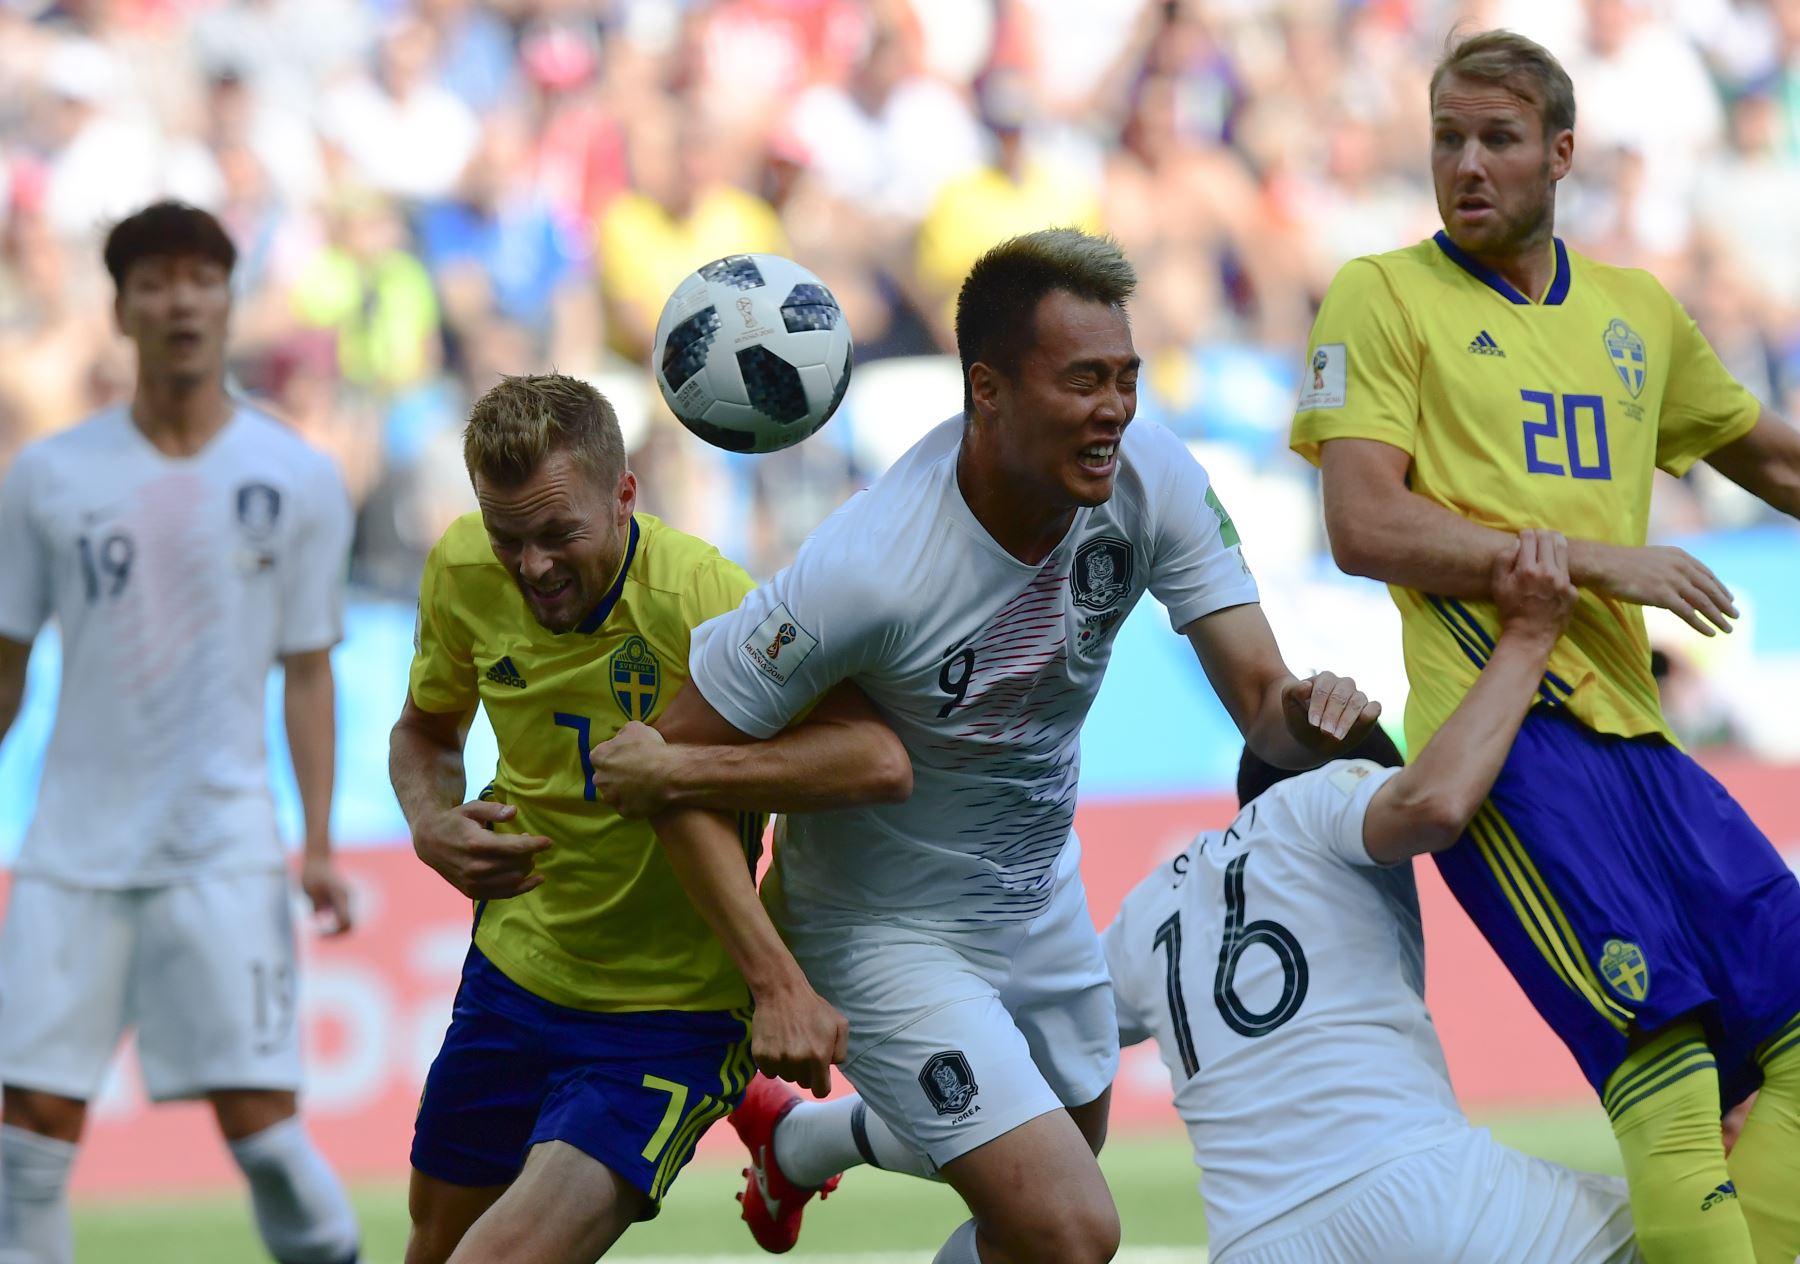 El centrocampista sueco Sebastian Larsson (C-L) compite por el cabezazo con el alero surcoreano Kim Shin-wook (C) durante el partido de fútbol del Grupo F de la Copa Mundial Rusia 2018 entre Suecia y Corea del Sur. AFP